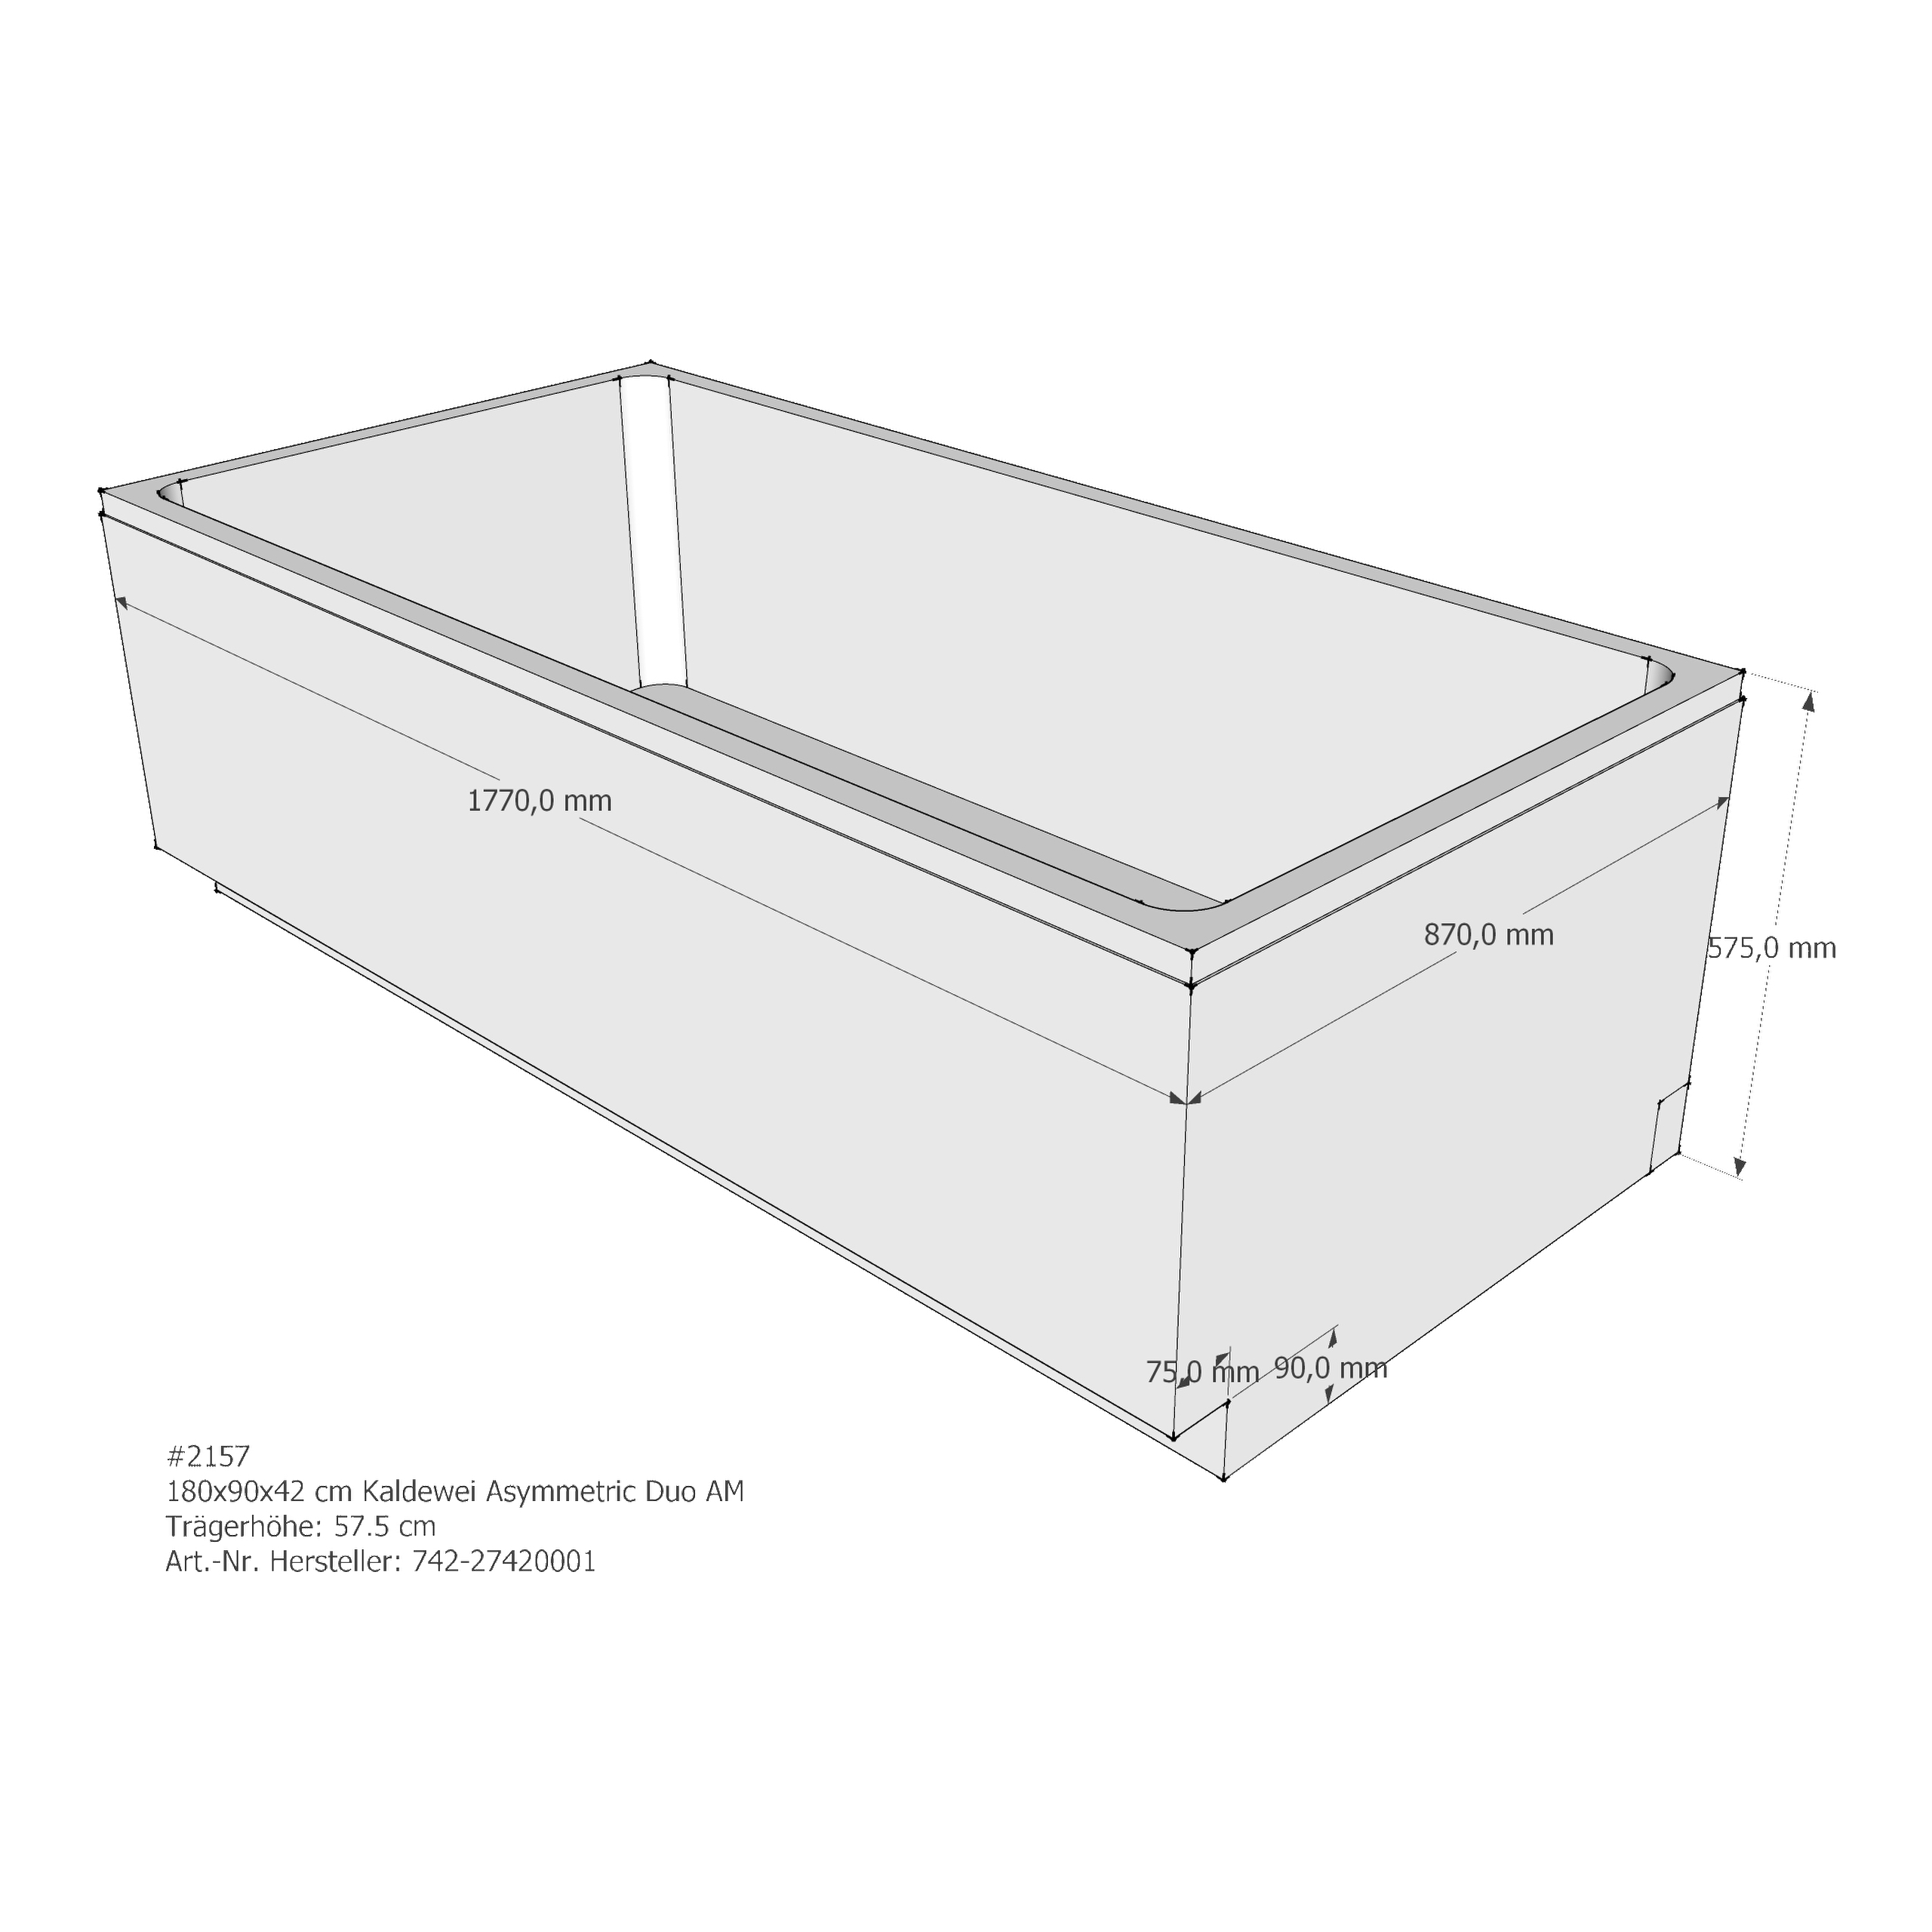 Badewannenträger für Kaldewei Asymetric Duo 180 × 90 × 42 cm